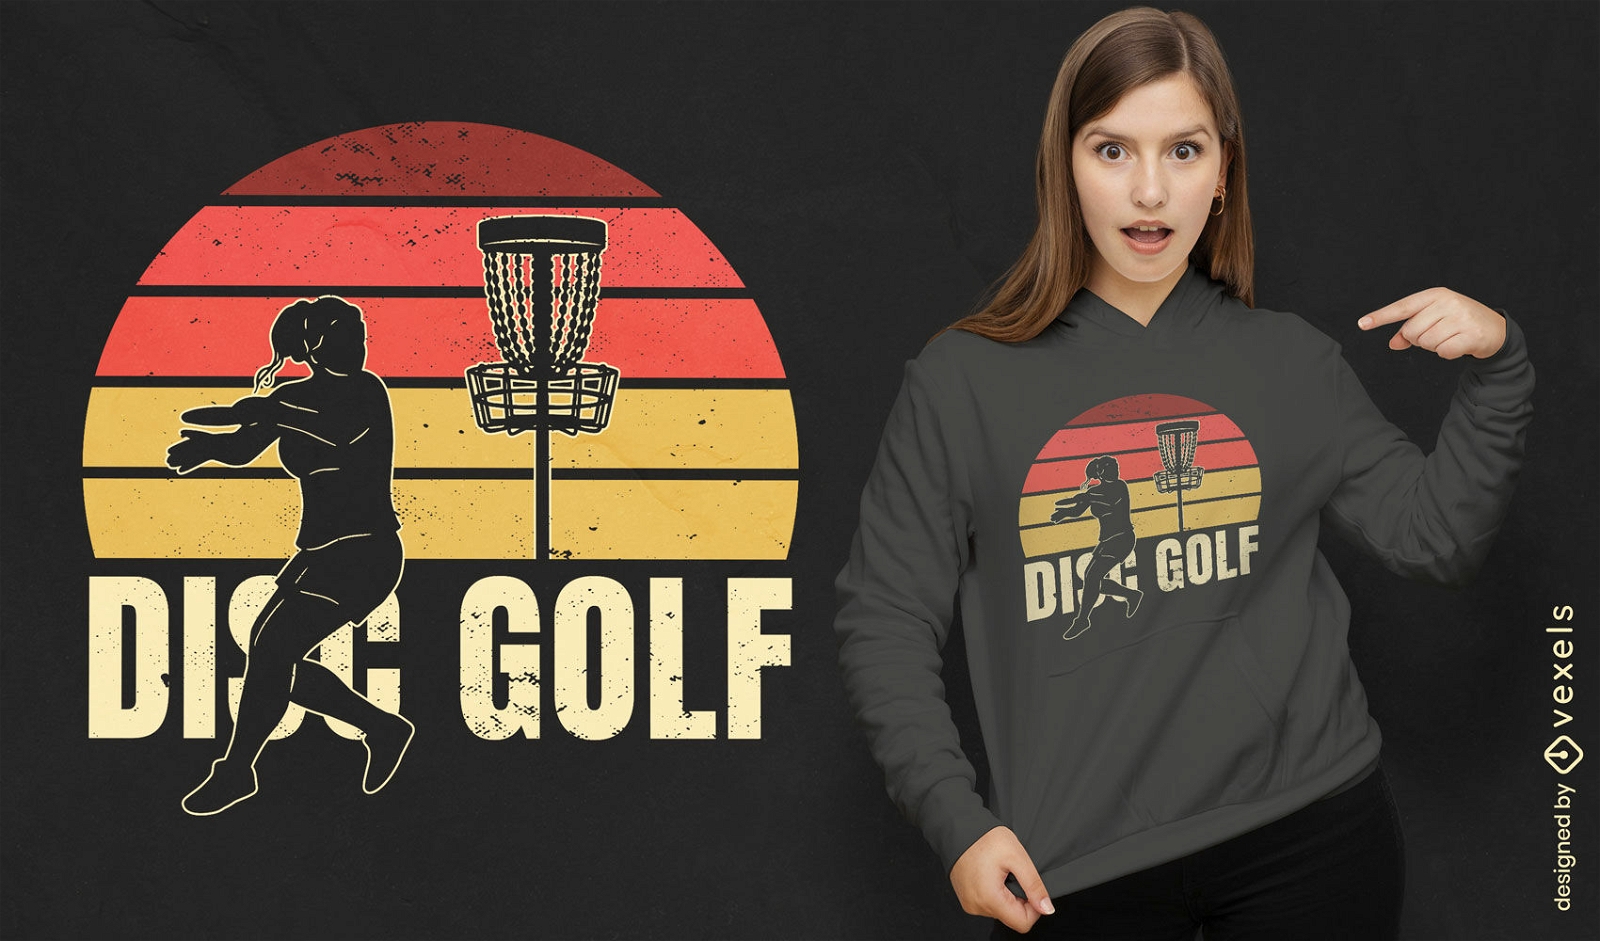 Disc golf sport retro sunset t-shirt design